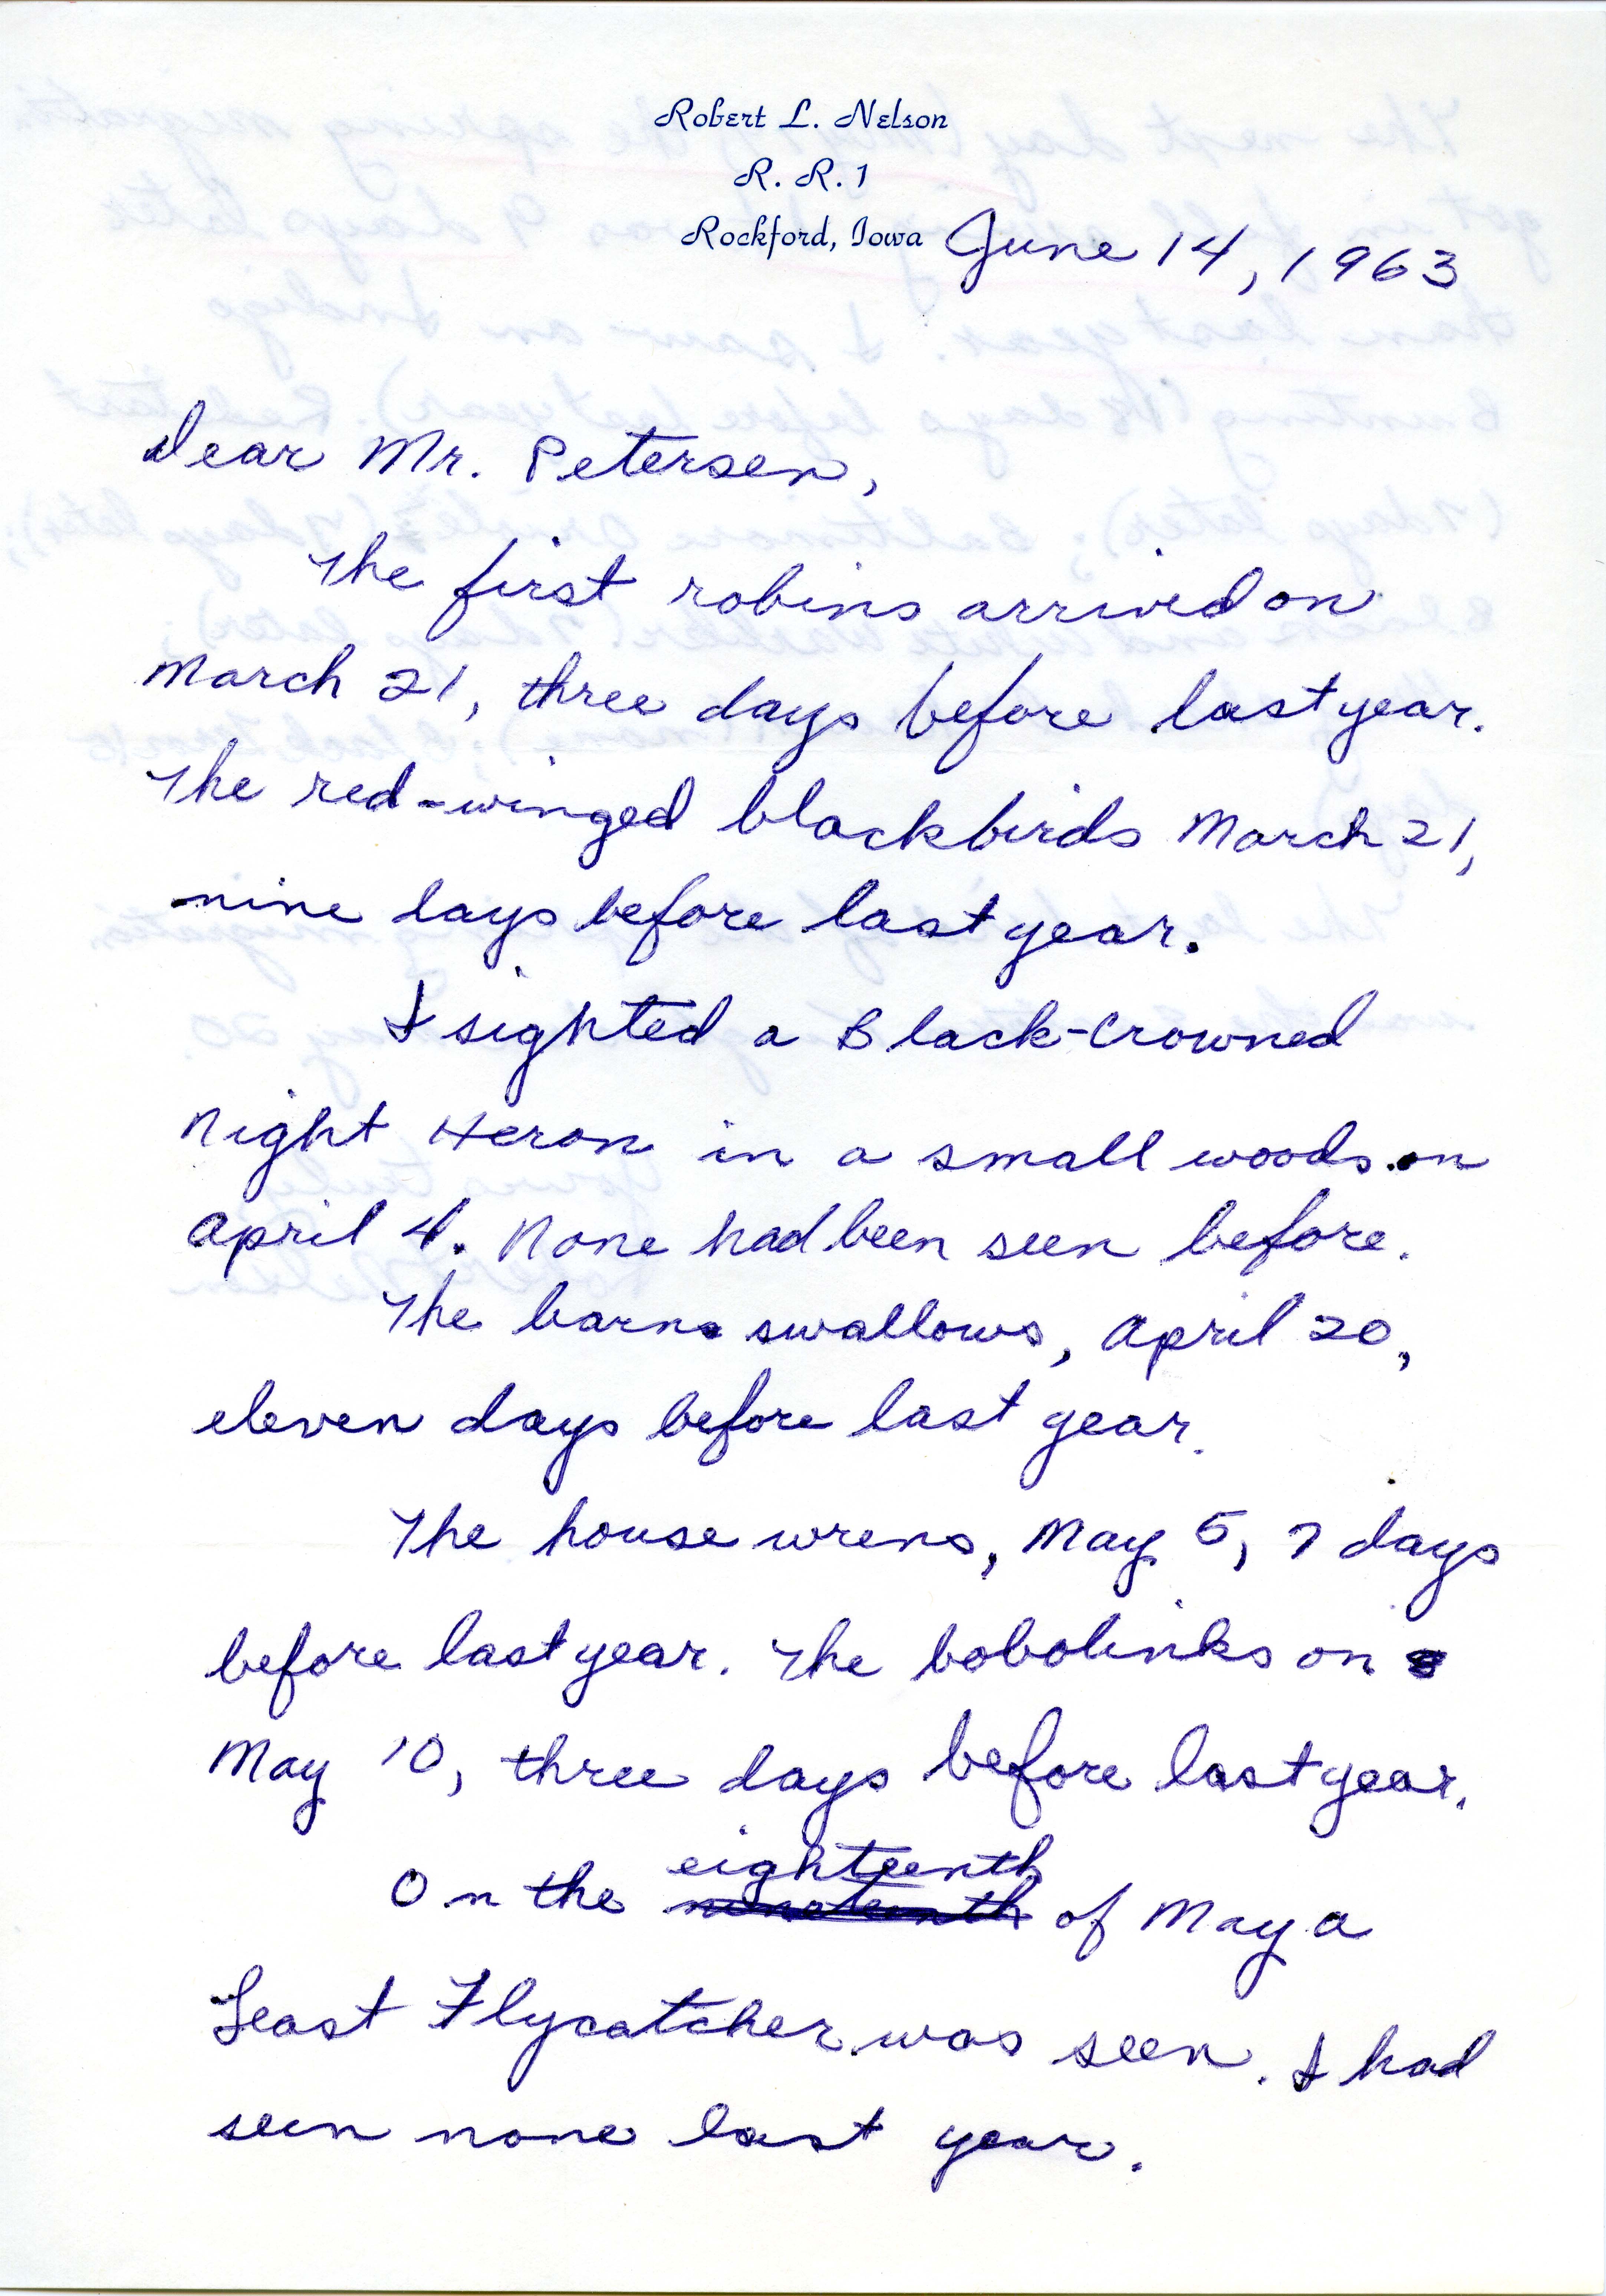 Robert L. Nelson letter to Peter C. Petersen regarding spring migration, June 14, 1963